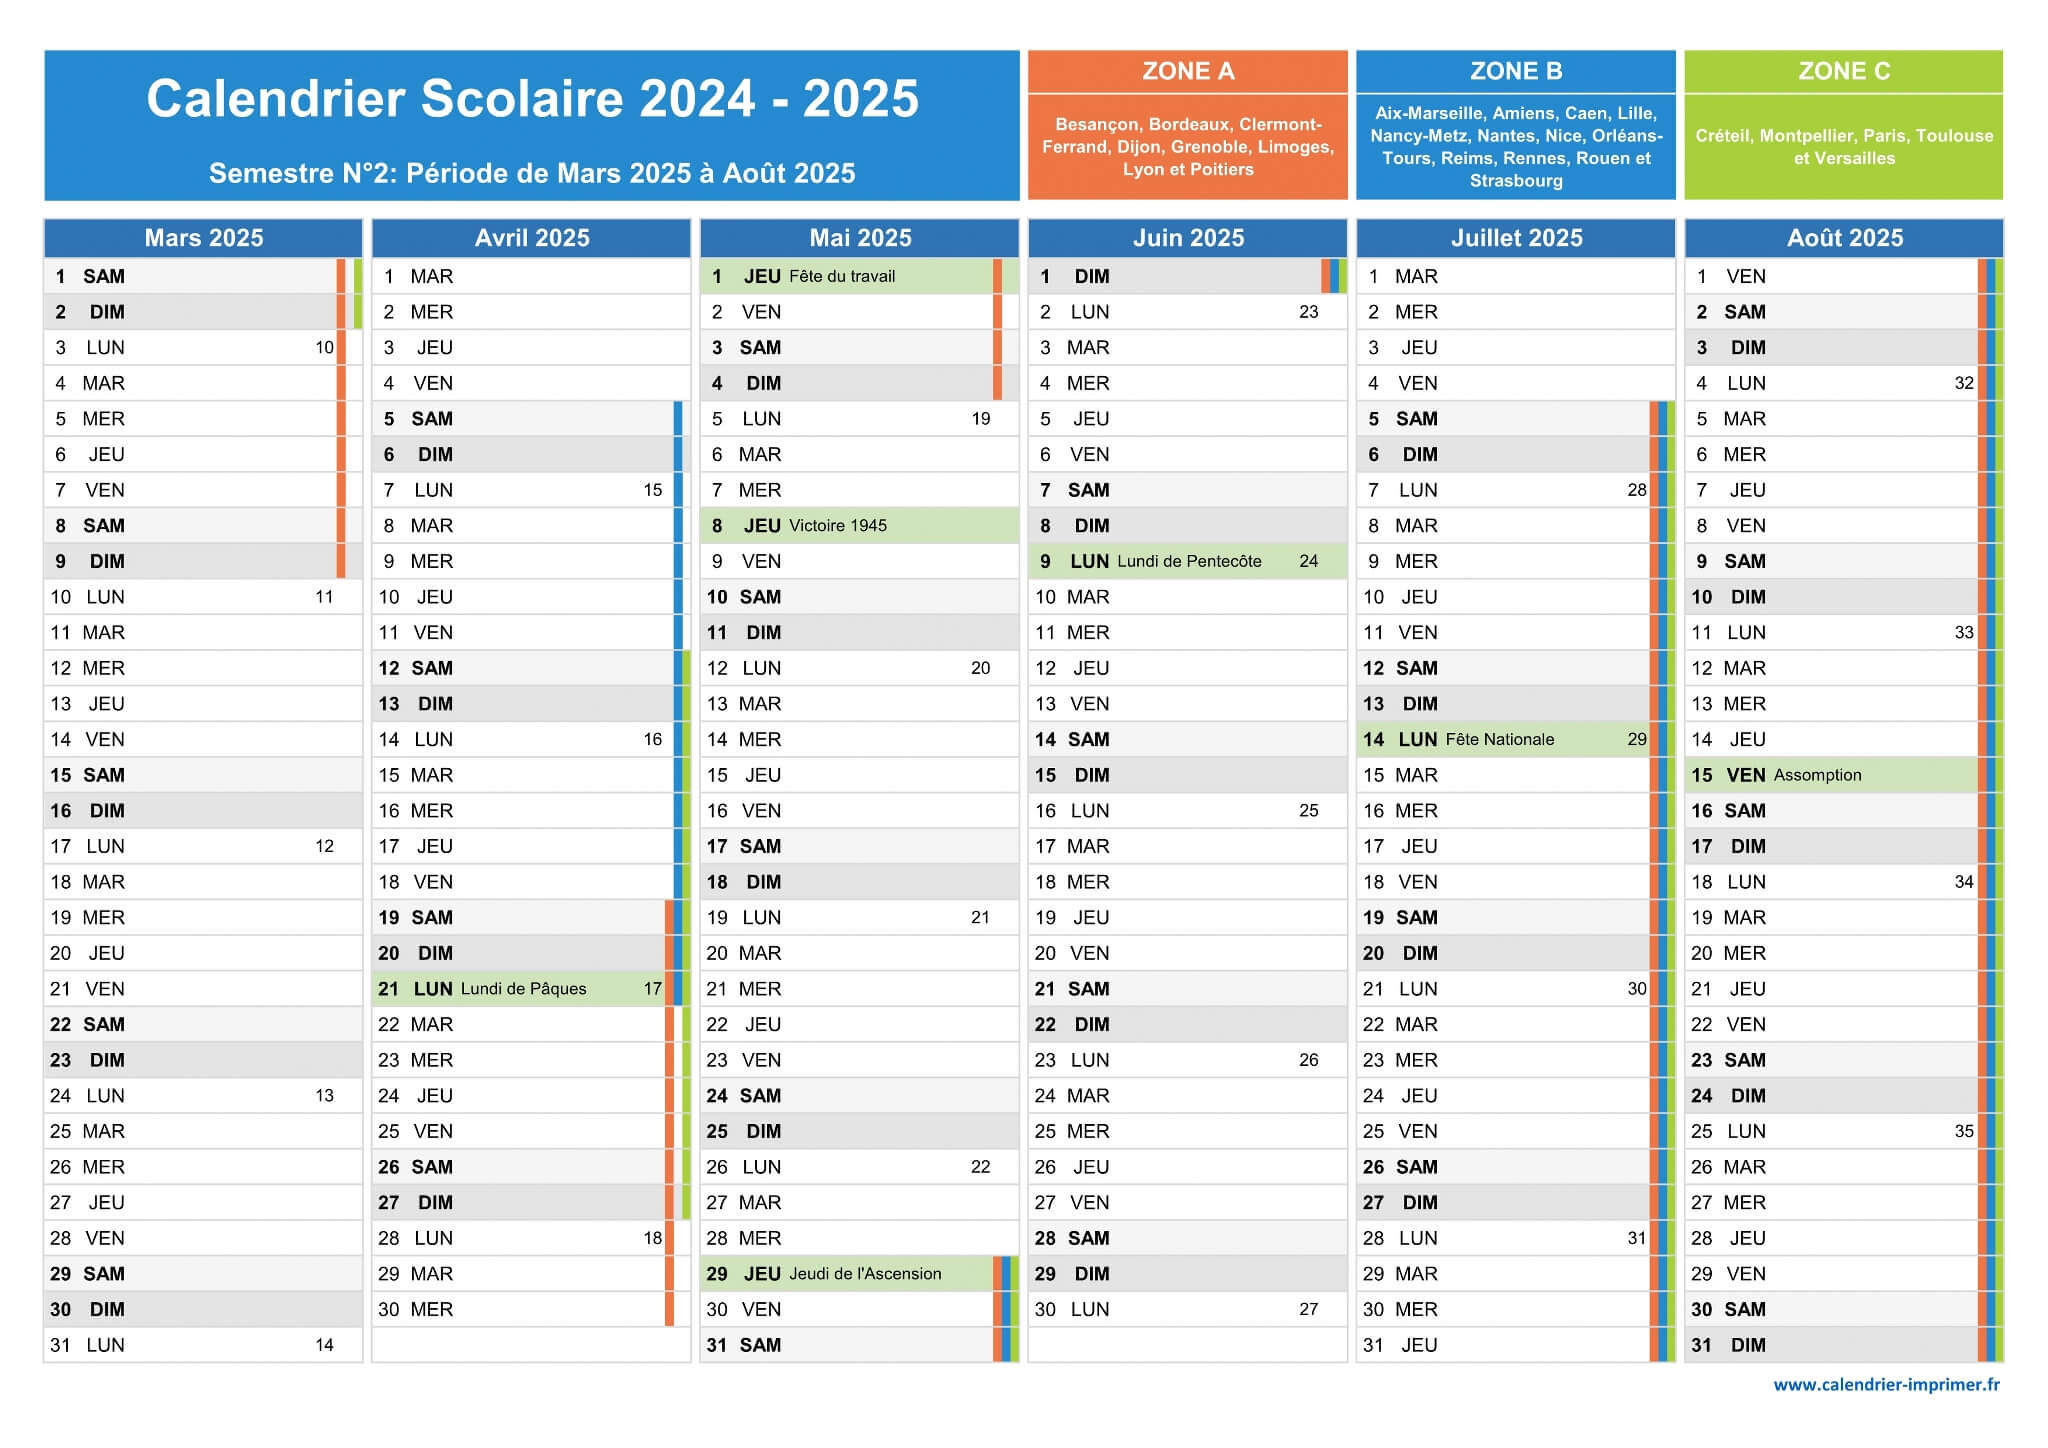 Vacances scolaires 2024-2025 et jours fériés : le calendrier avec